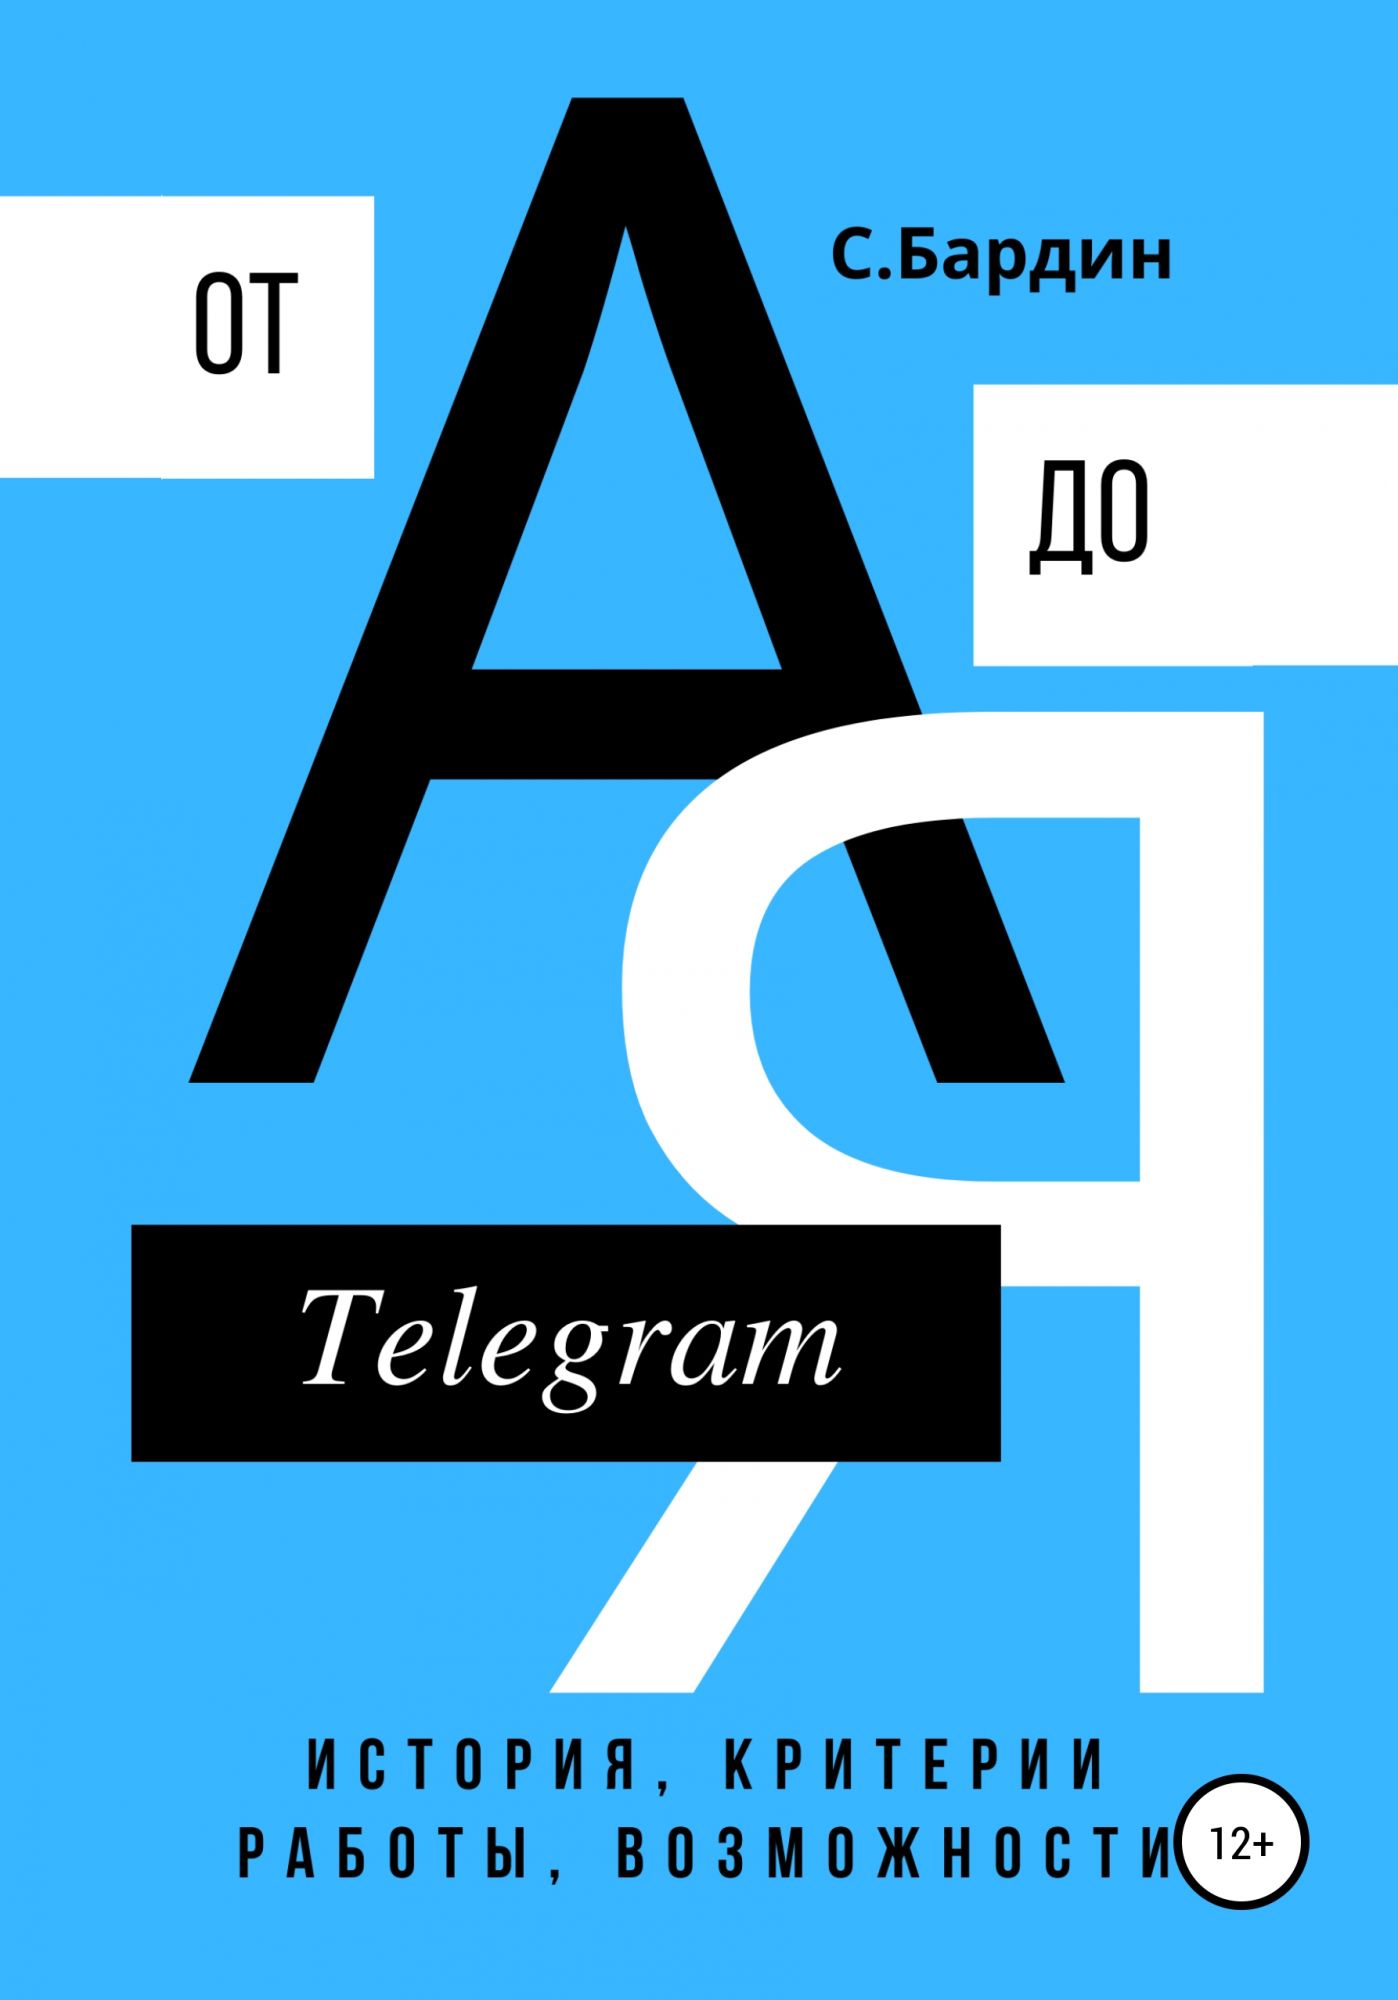 Книга: Телеграмма